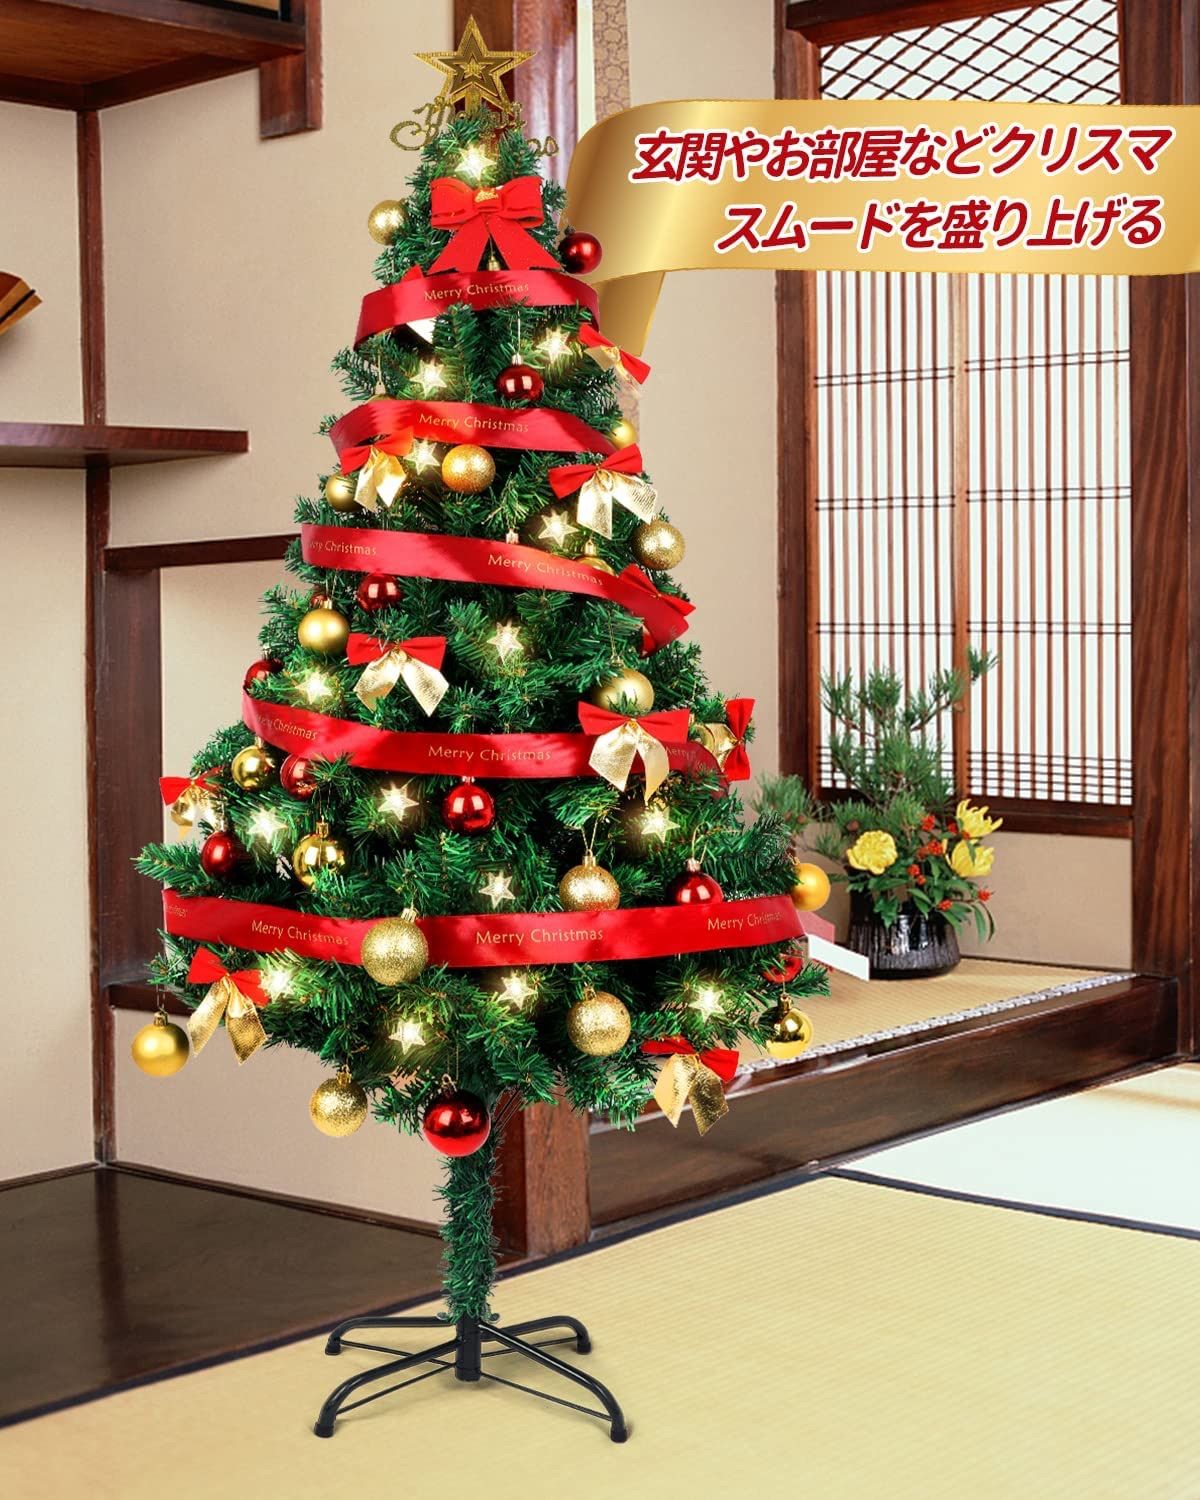 クリスマスツリー 150CM 北欧 おしゃれ 高級 豪華 収納 高濃密度 組立